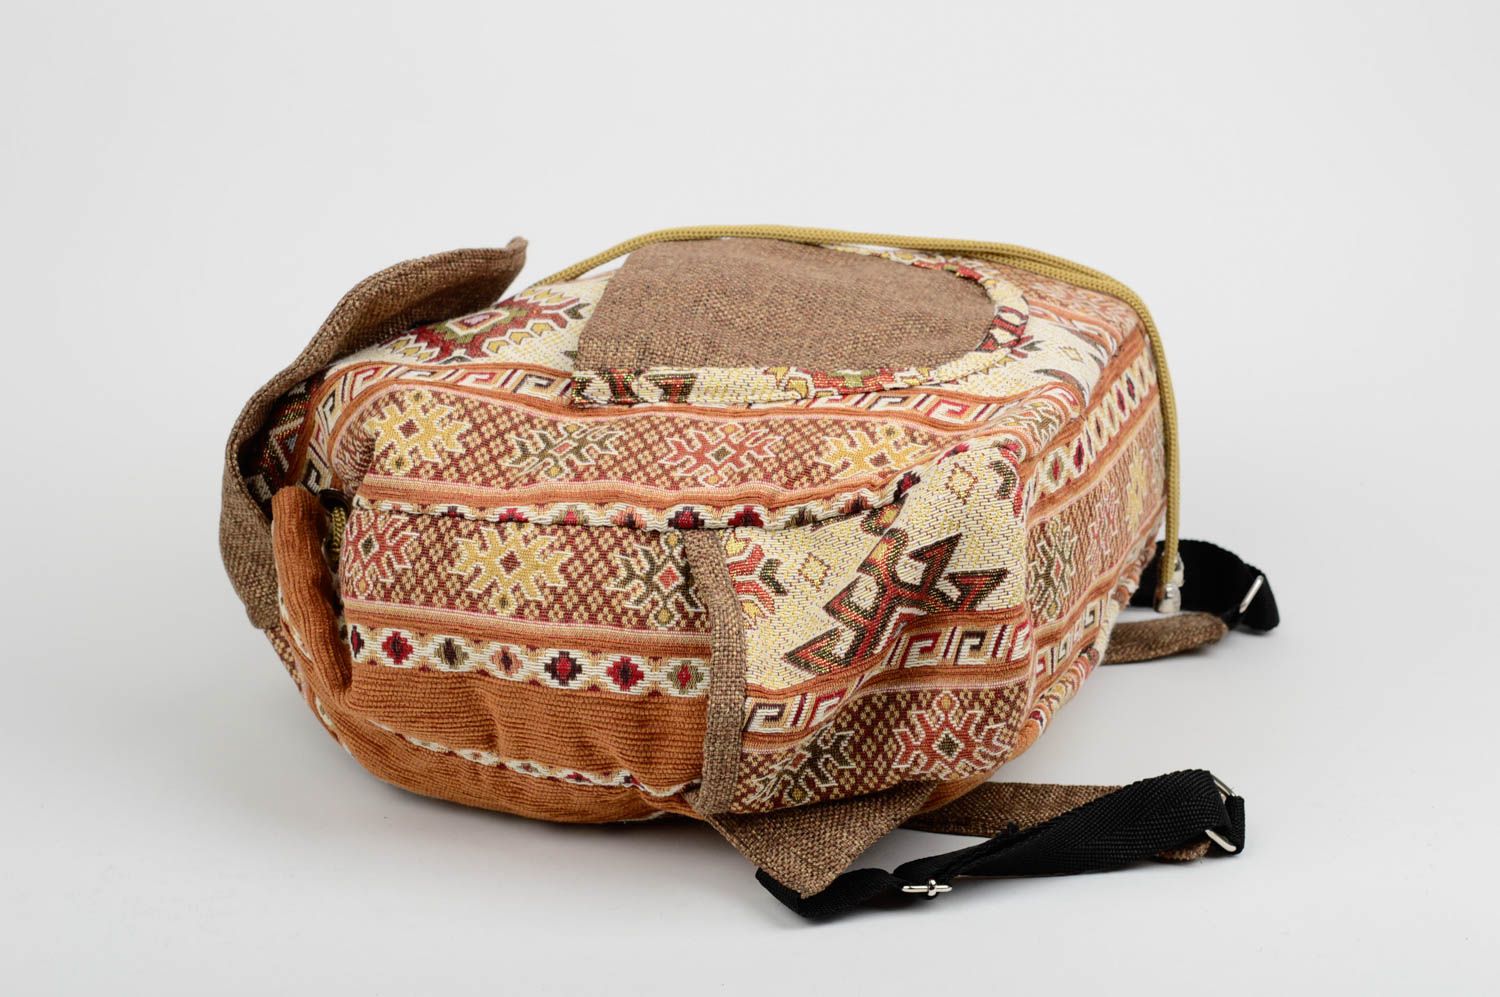 Handmade bag unusual backpack for women gift ideas designer bag for girls photo 3